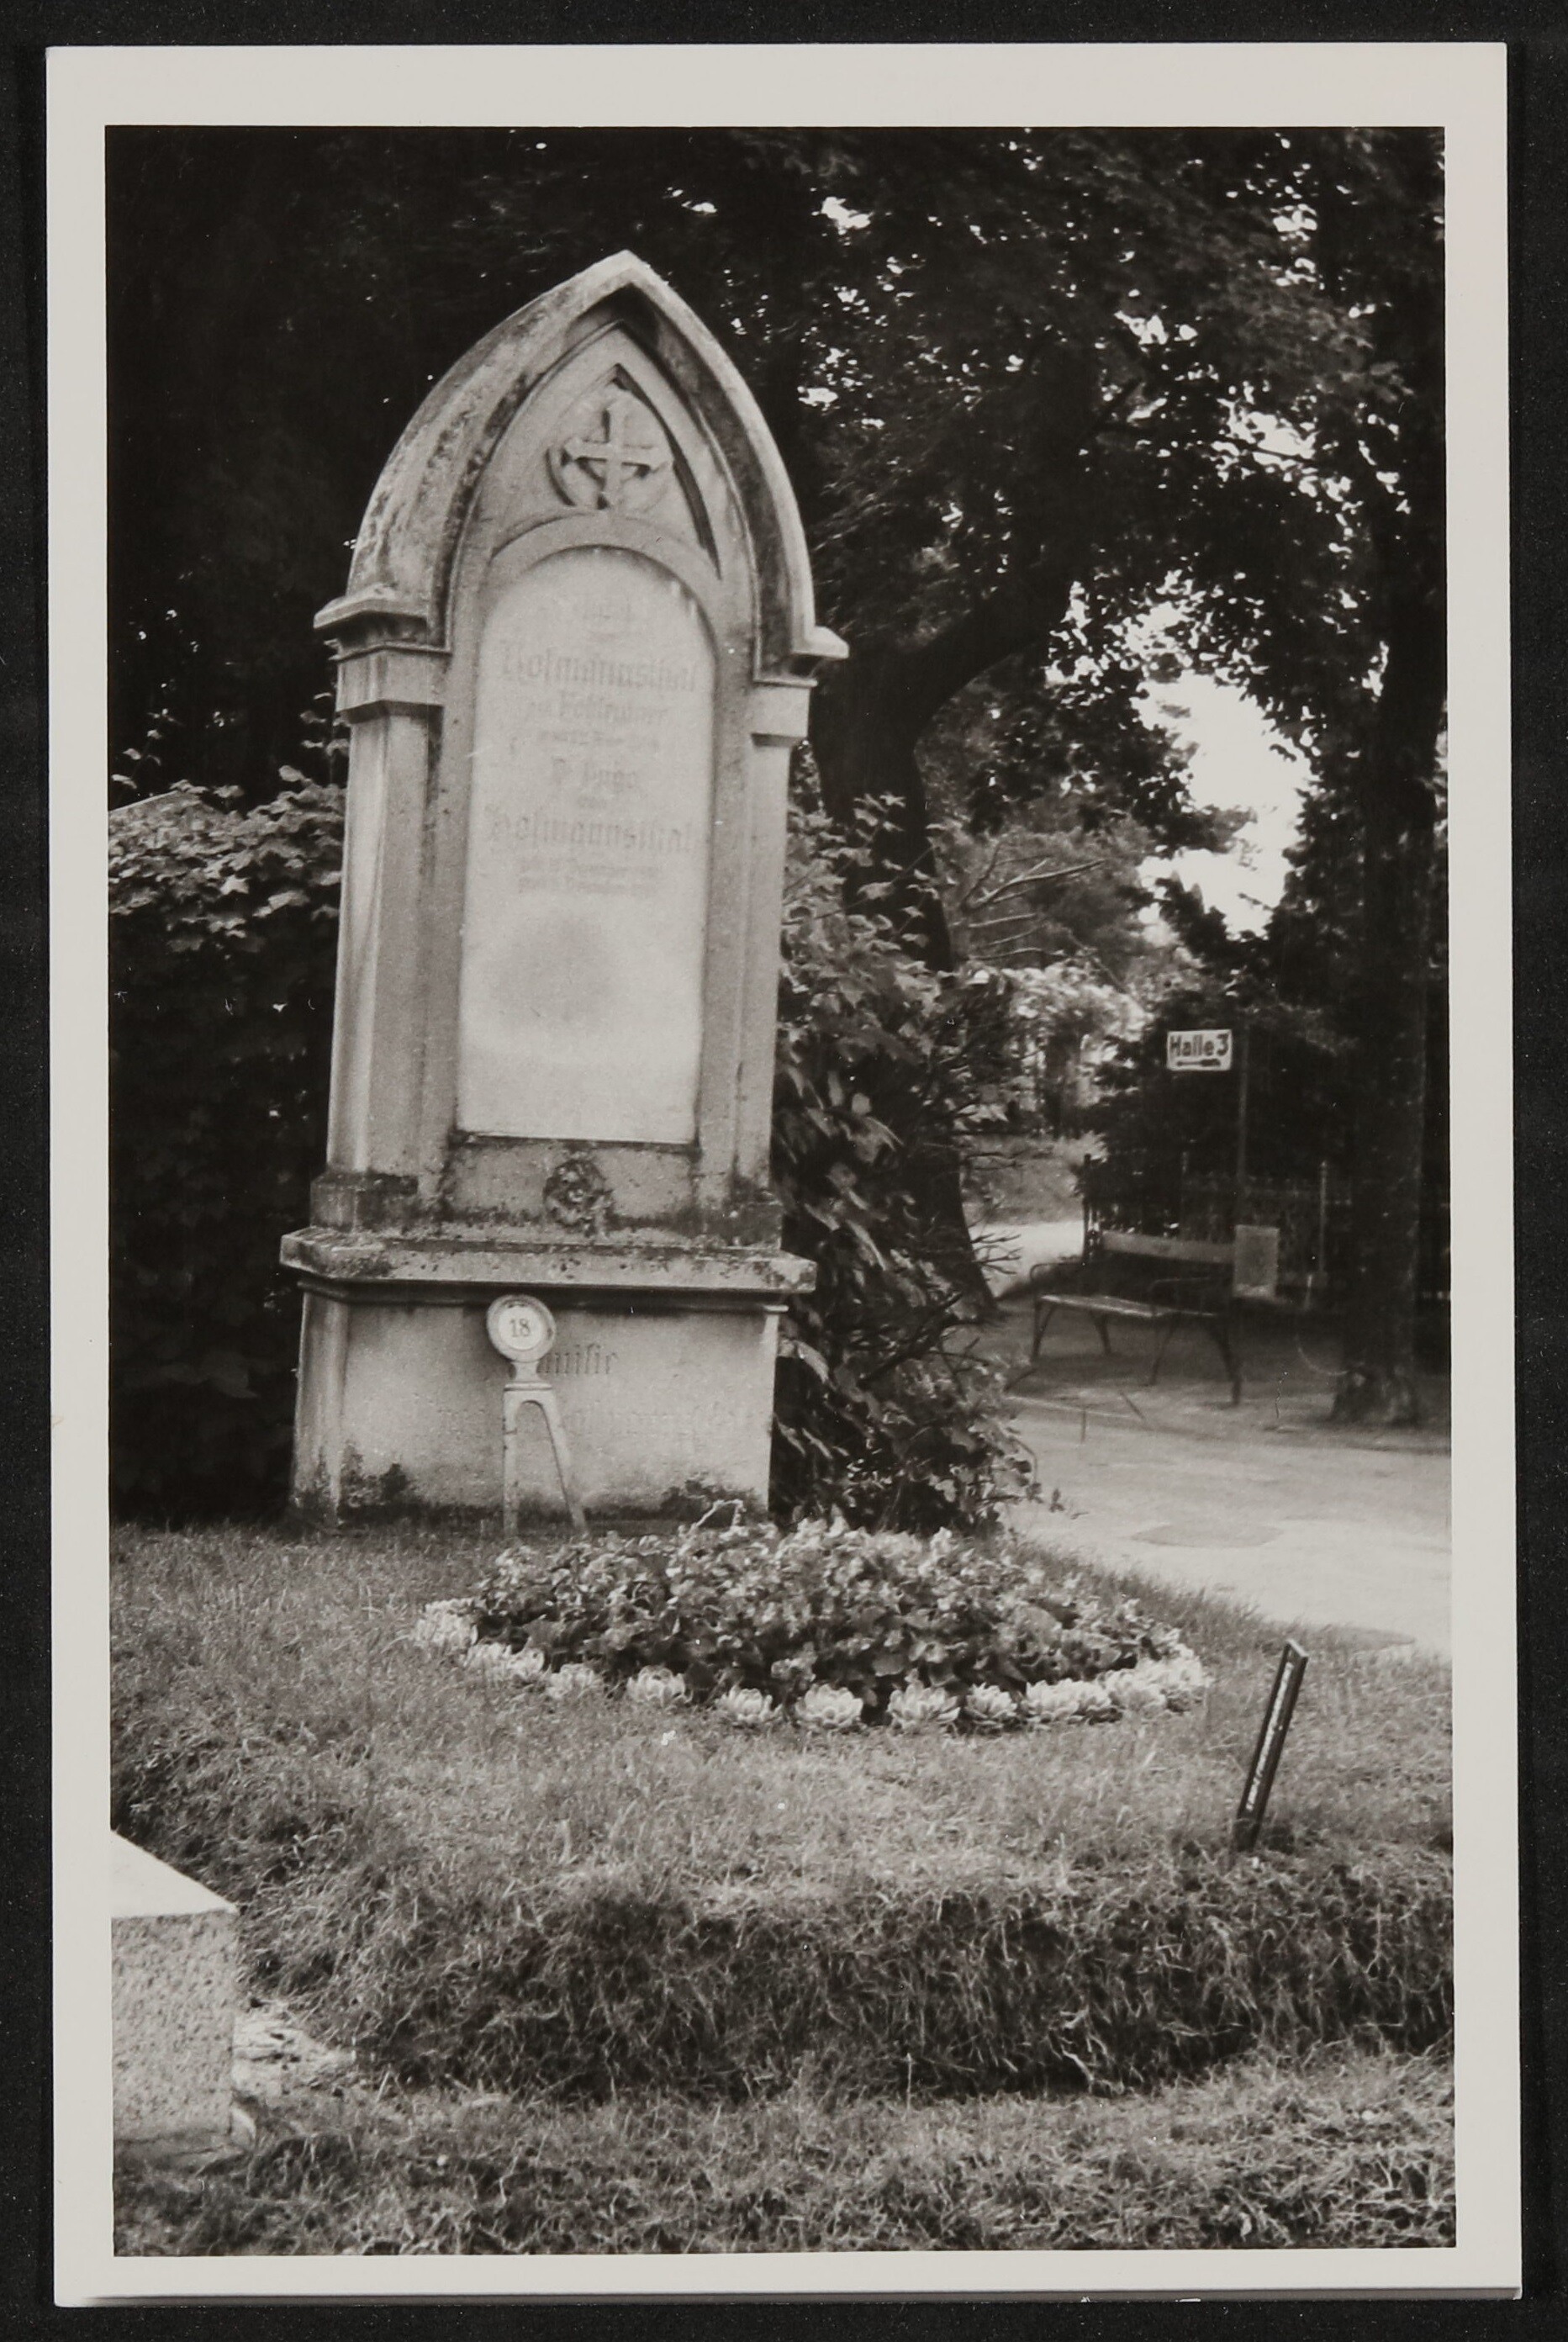 Grabstein von Hofmannsthals Eltern (Freies Deutsches Hochstift / Frankfurter Goethe-Museum CC BY-NC-SA)